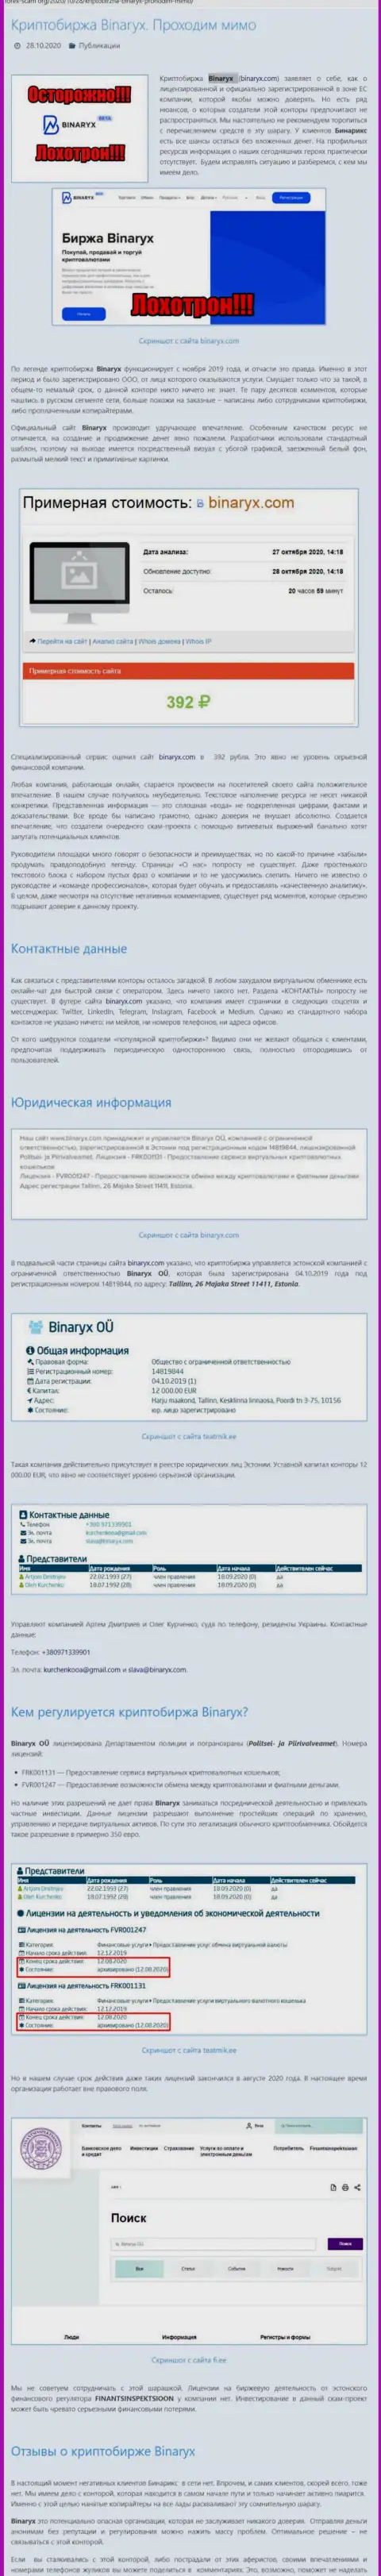 Binaryx OÜ - это КИДАЛЫ ! Слив вложений гарантируют стопроцентно (обзор организации)